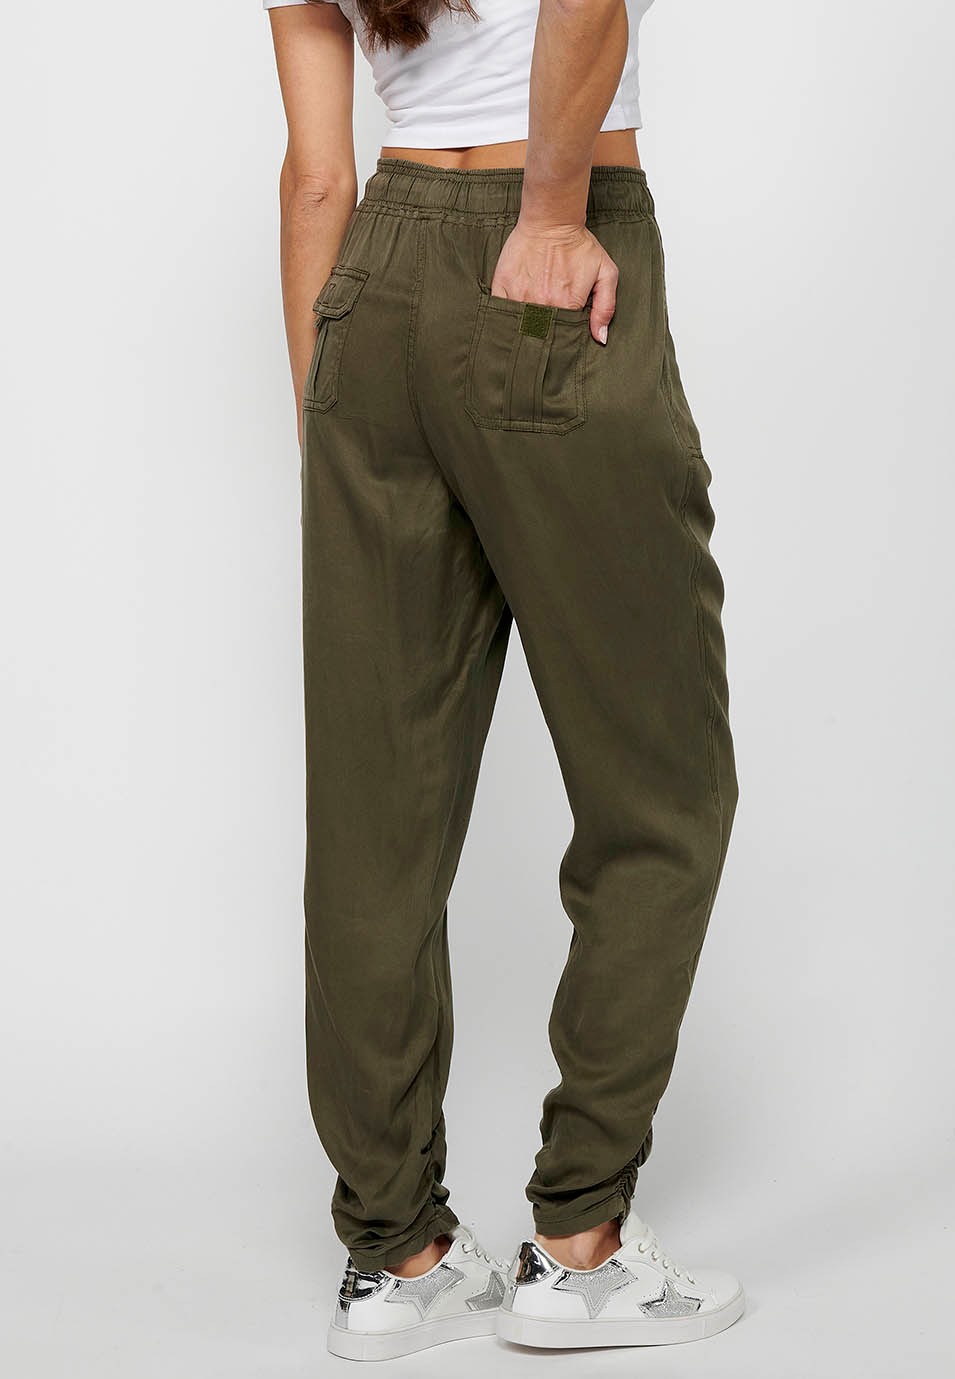 Pantalón largo jogger con Acabado rizado y Cintura engomada con Cuatro bolsillos, dos traseros con solapa de Color Kaki para Mujer 5